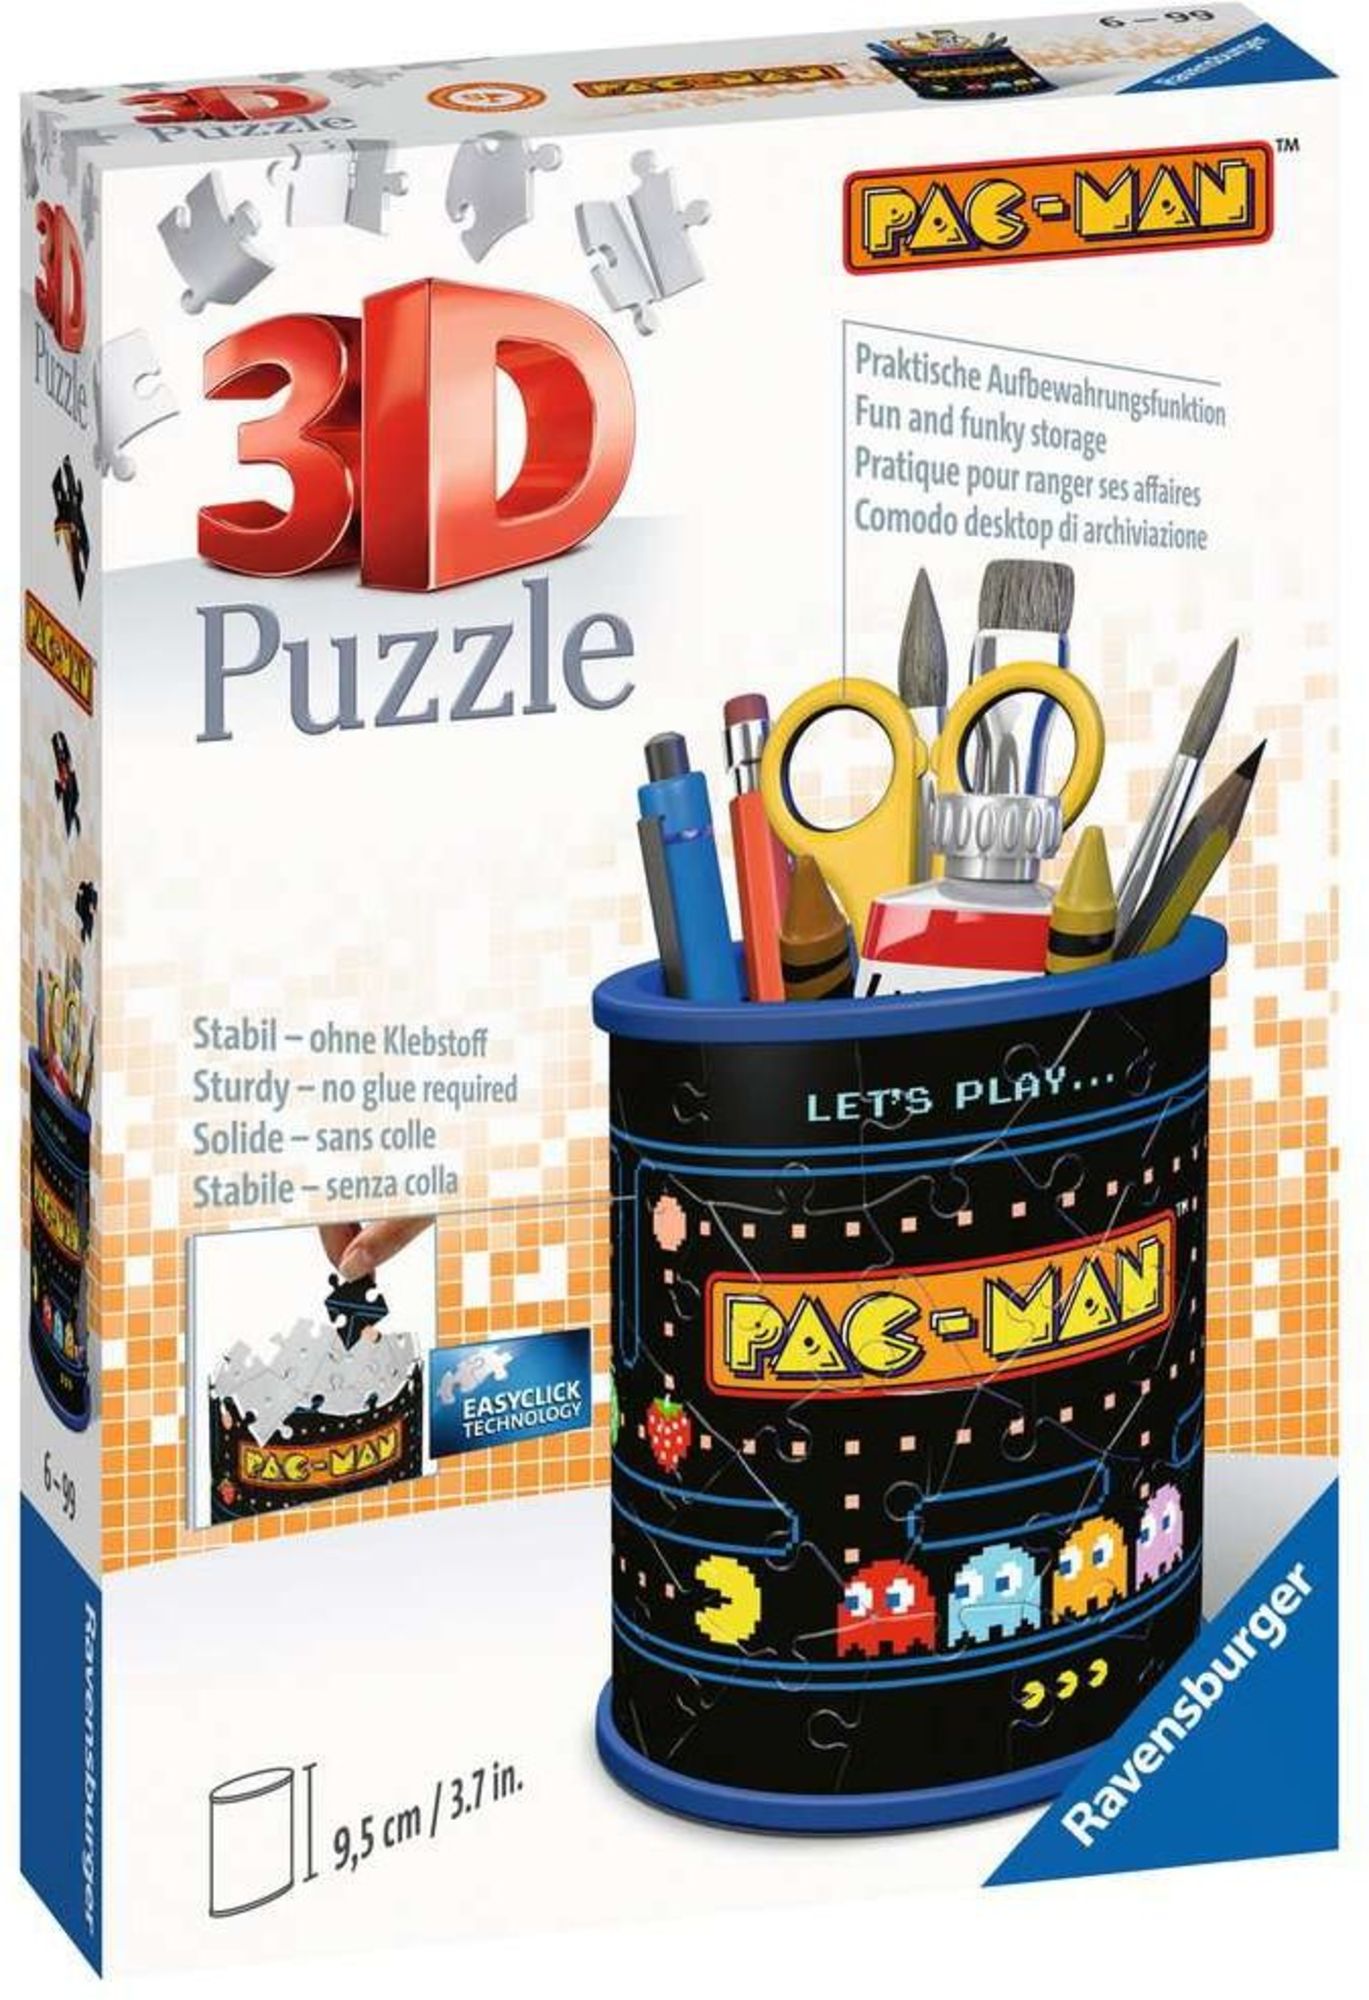 3D Puzzle Ravensburger Utensilo - Pac-Man 54 Teile' kaufen - Spielwaren